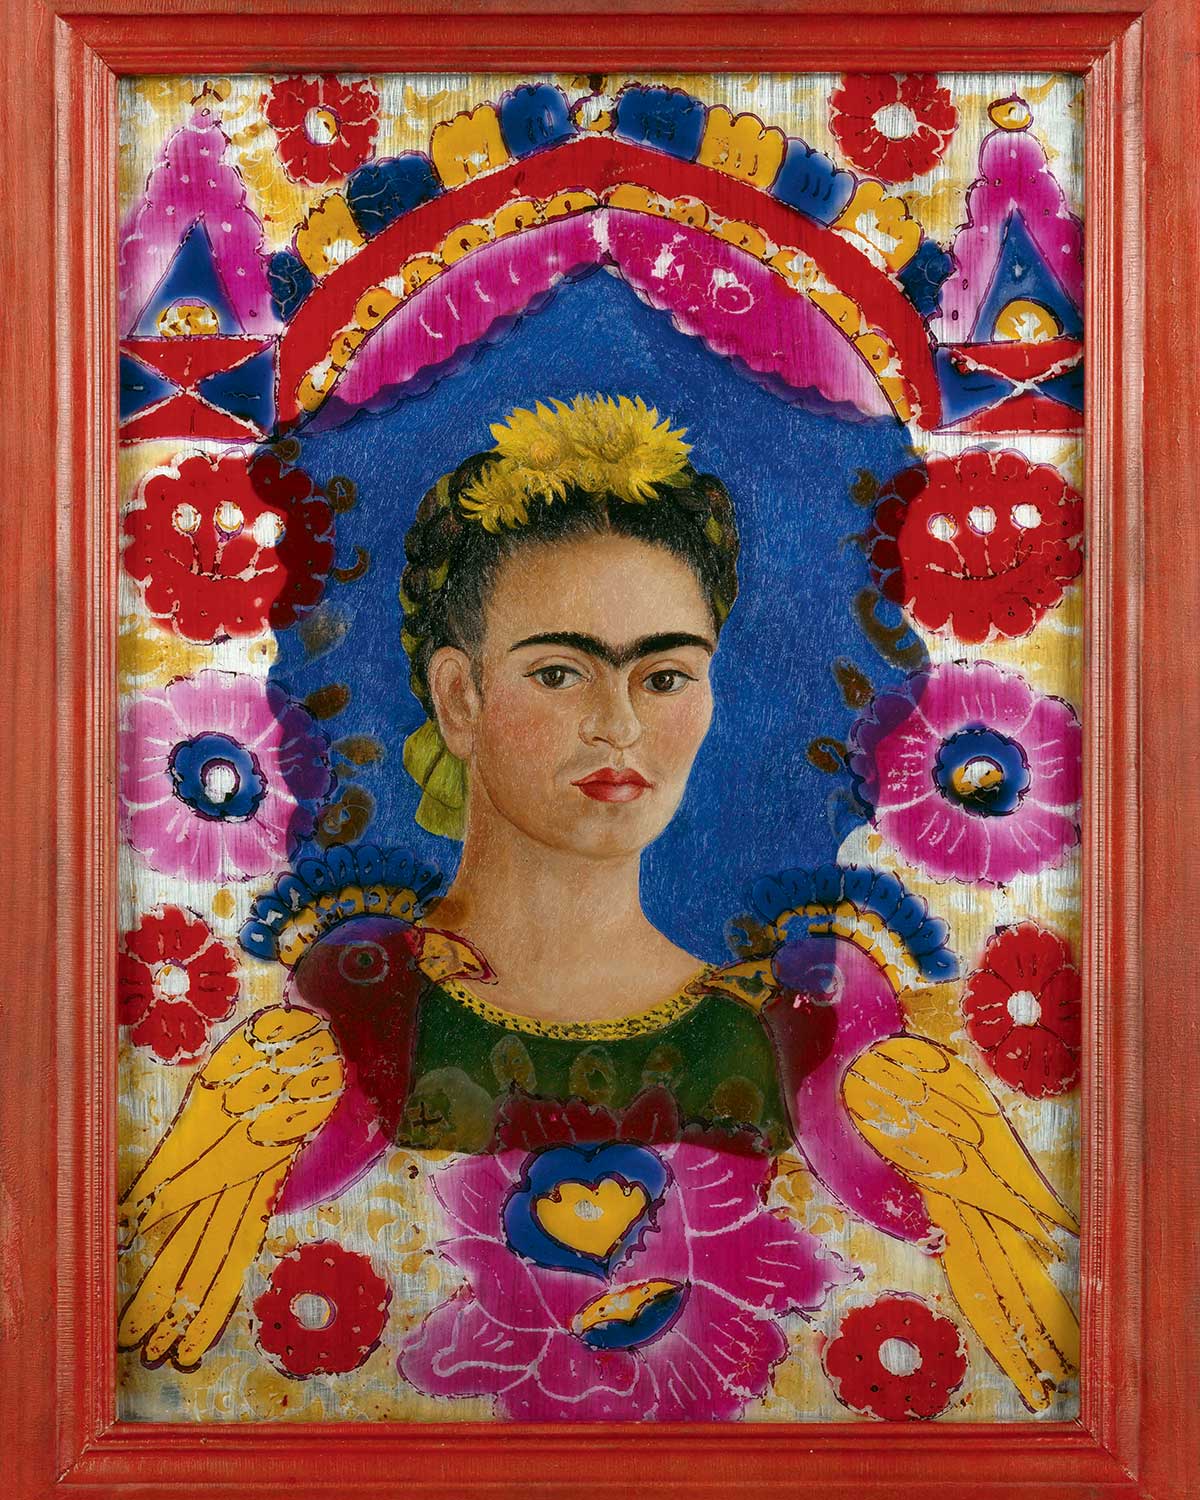 Frida Kahlo (1907-1954), Le Cadre, 1938, Fixé sur verre (plaque de verre), Paris, Centre Pompidou, musée national d’art moderne, Centre de création industrielle, Achat de l’État en 1939 © Centre Pompidou, MNAM-CCI, Dist. RMN-Grand Palais / Jean-Claude Planchet © [2016] Banco de México Diego Rivera Frida Kahlo, Museums Trust, Mexico, D.F. / Adagp, Paris